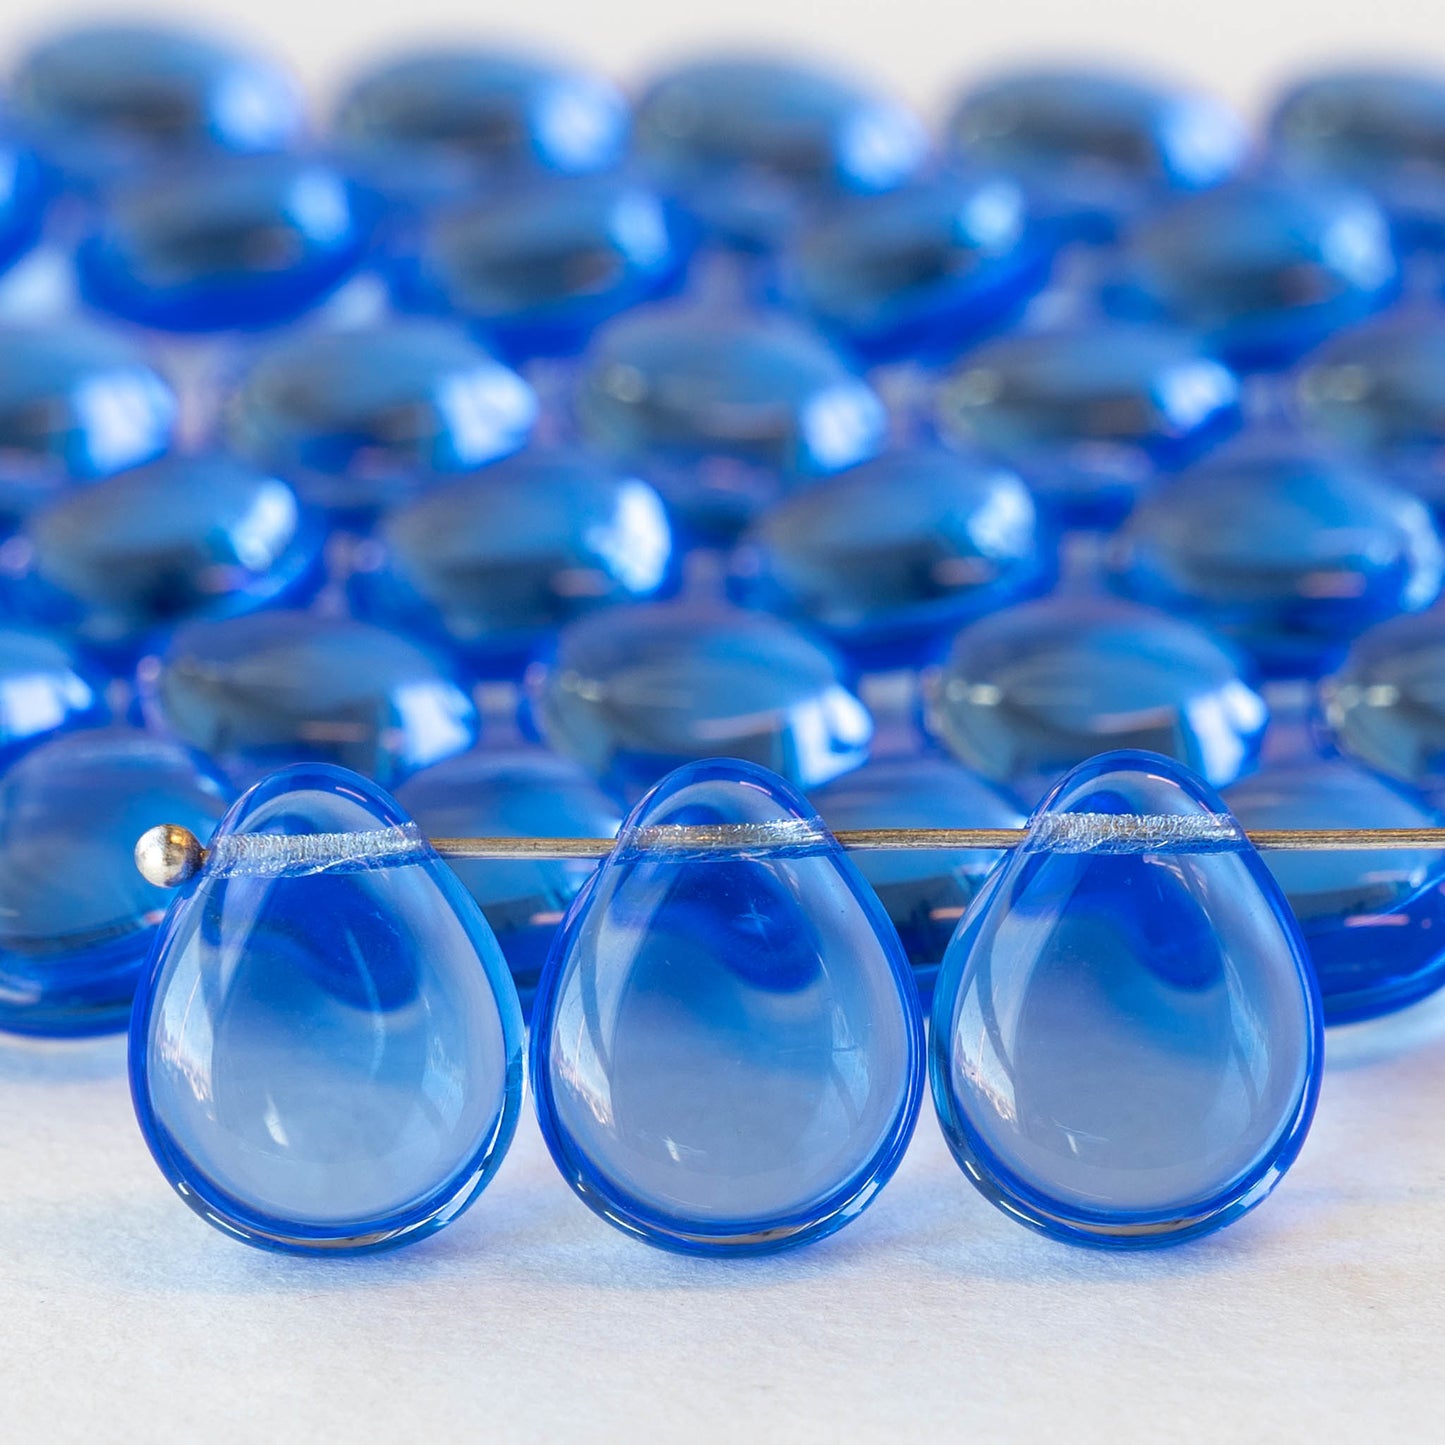 12x16mm Flat Teardrop Beads - Light Blue - 20 Beads